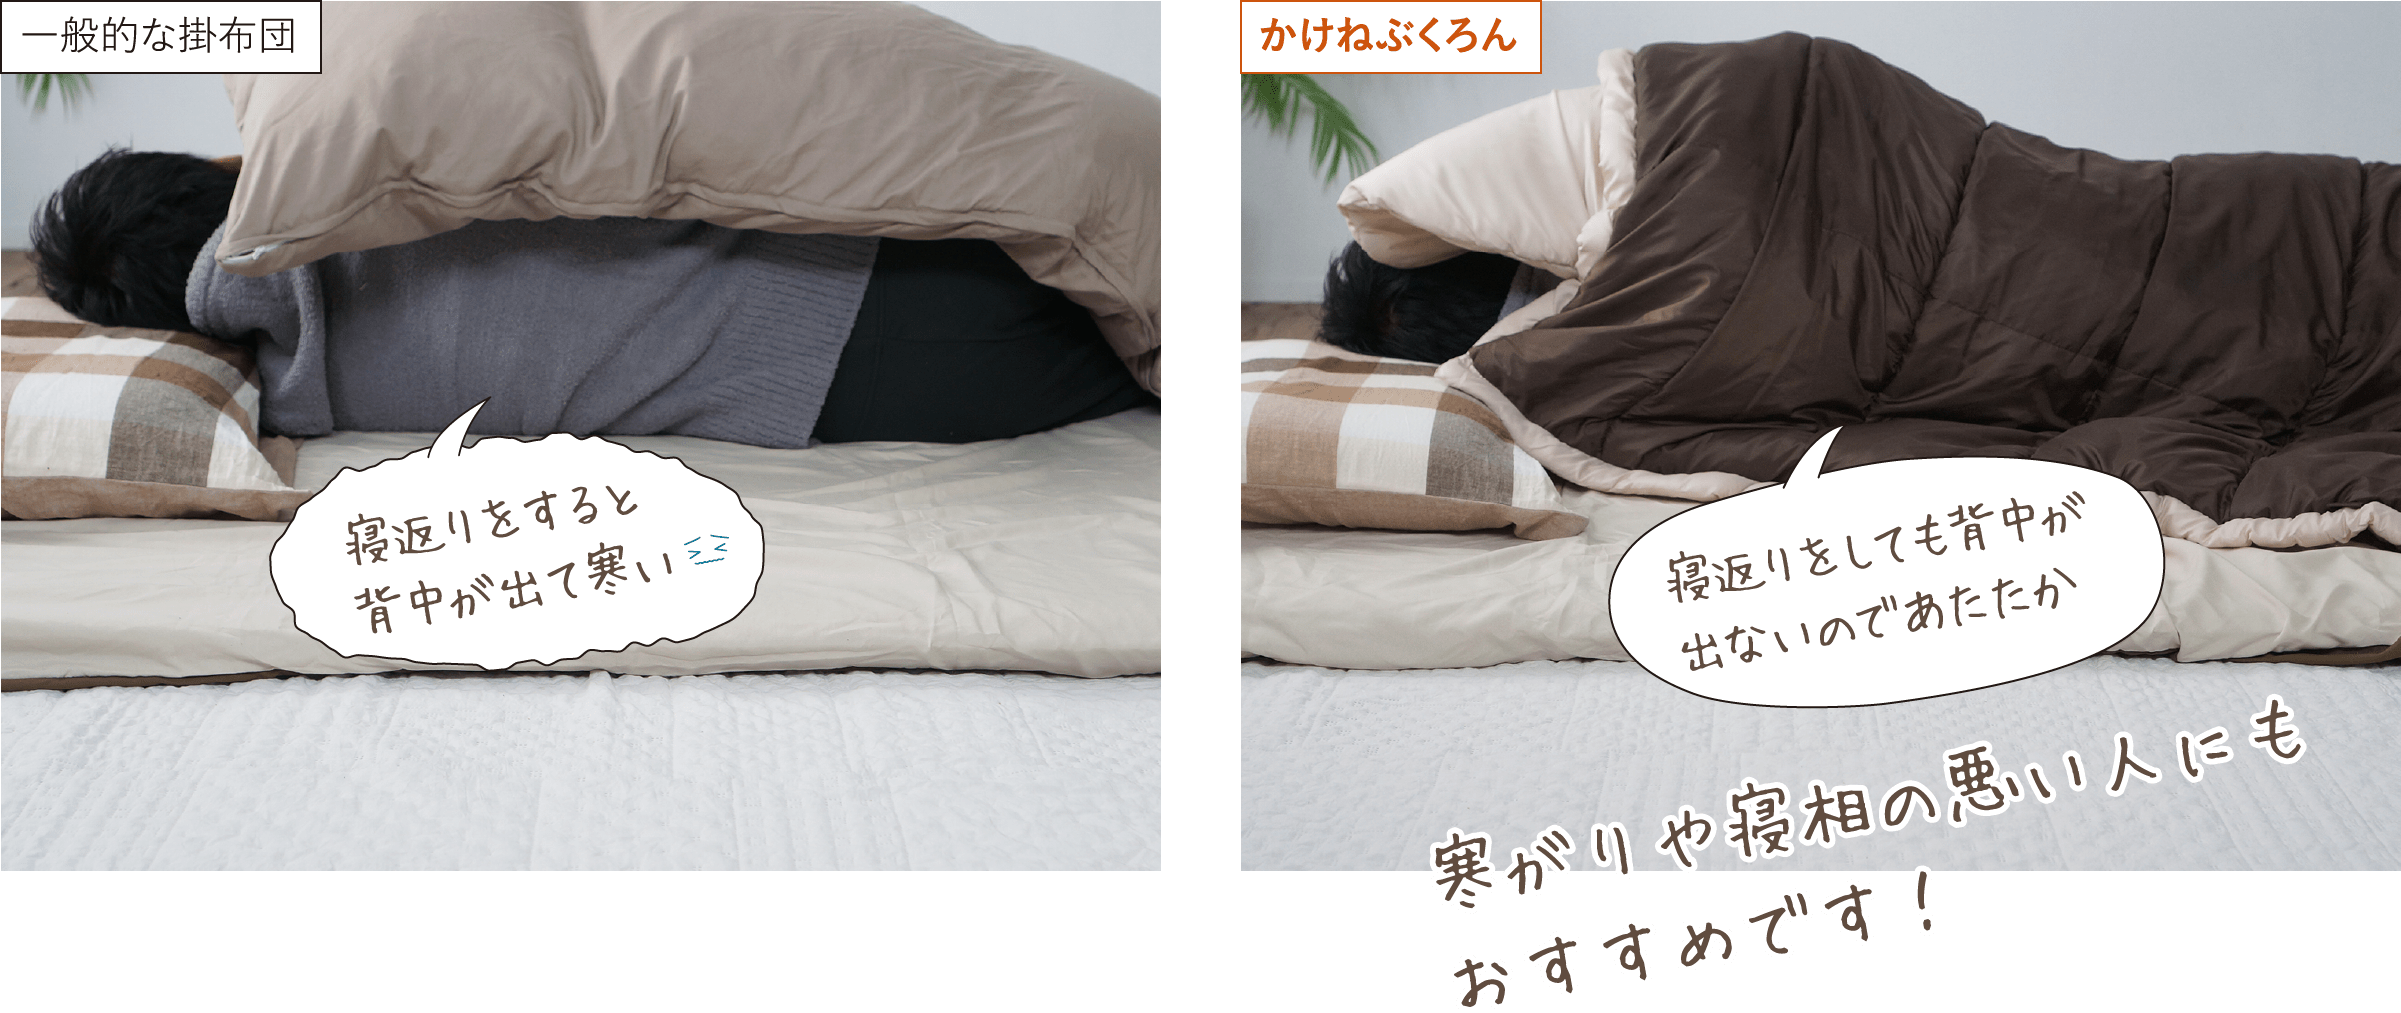 画像：一般的な掛布団:寝返りをすると背中が出て寒い、かけねぶくろん:寝返りをしても背中が出ないのであたたか。寒がりや寝相の悪い人にもおすすめです！ 